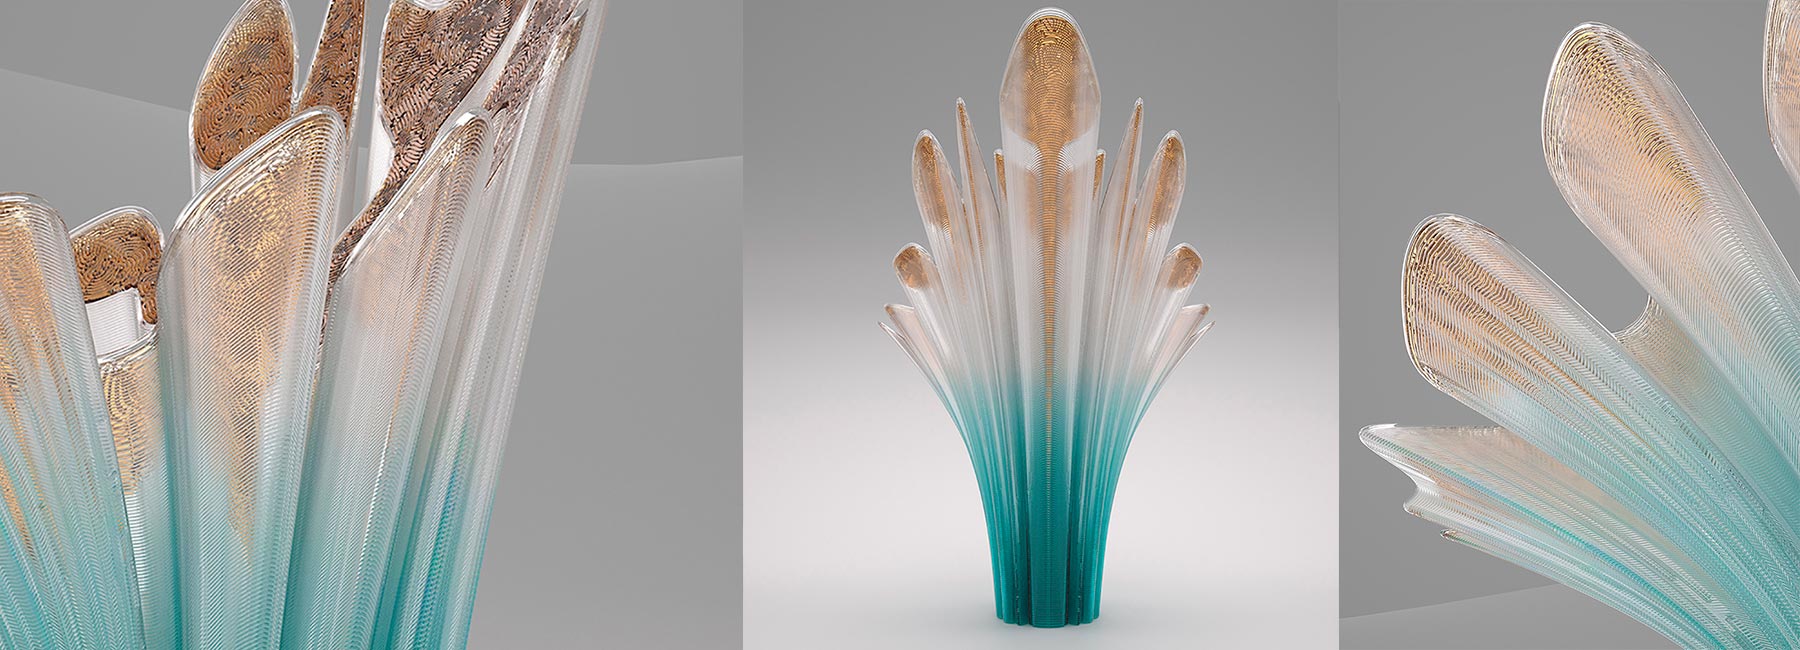 Nagami представит стулья от Zaha Hadid Architects, Росса Лавгроува и Дэниела Уидрига, созданные с помощью 3D-печати